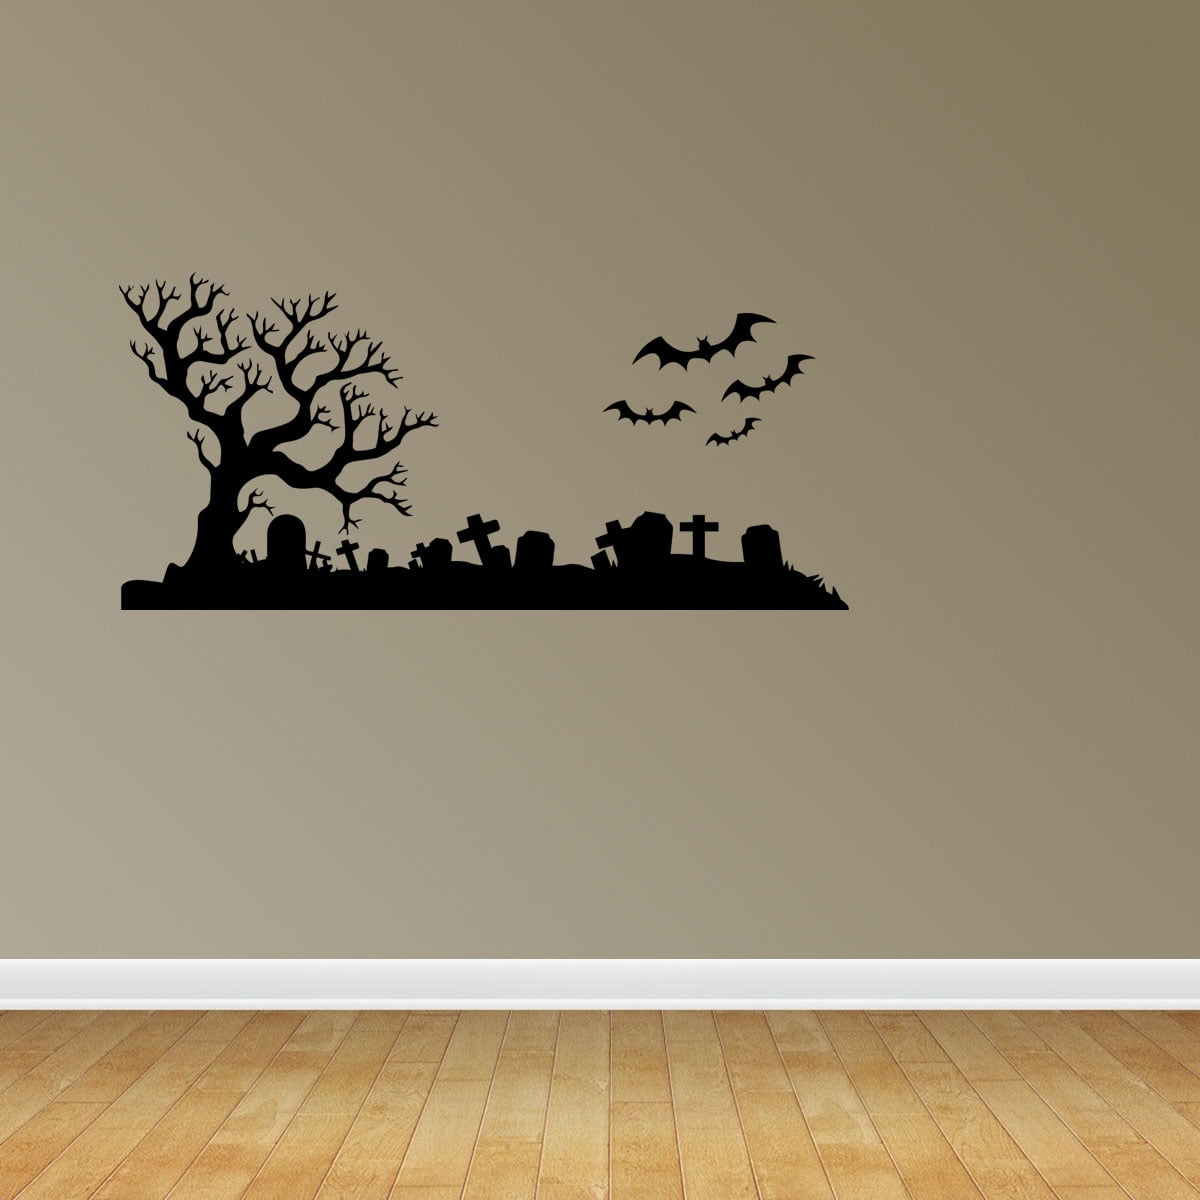 Halloween Cemetery Background Stickers Creepy Bats Doors Decals Room Decorations 